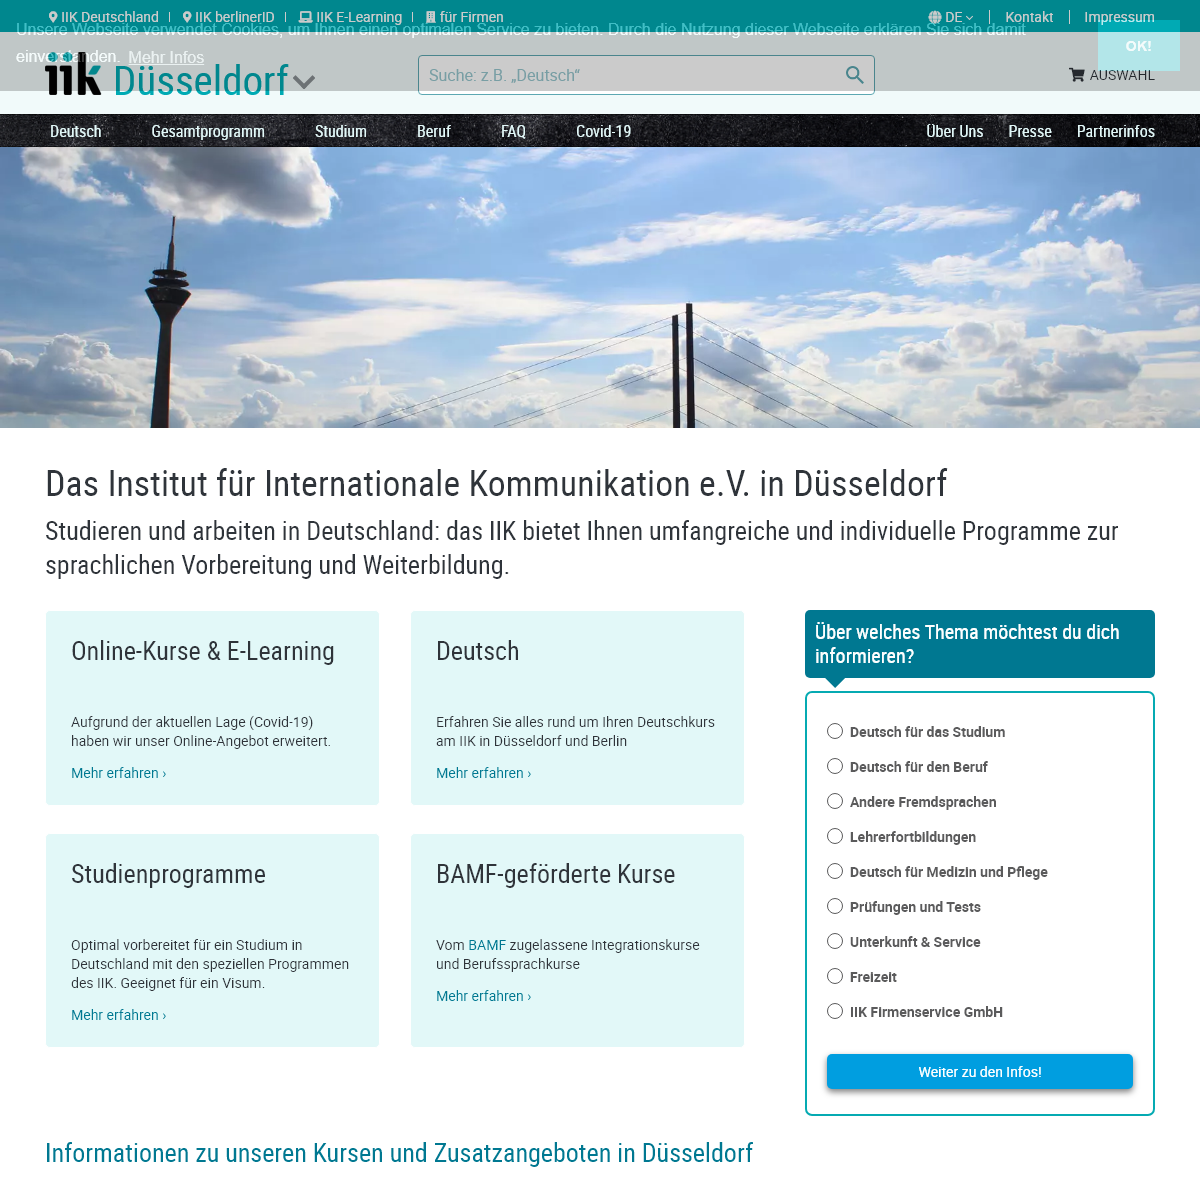 A complete backup of iik-duesseldorf.de